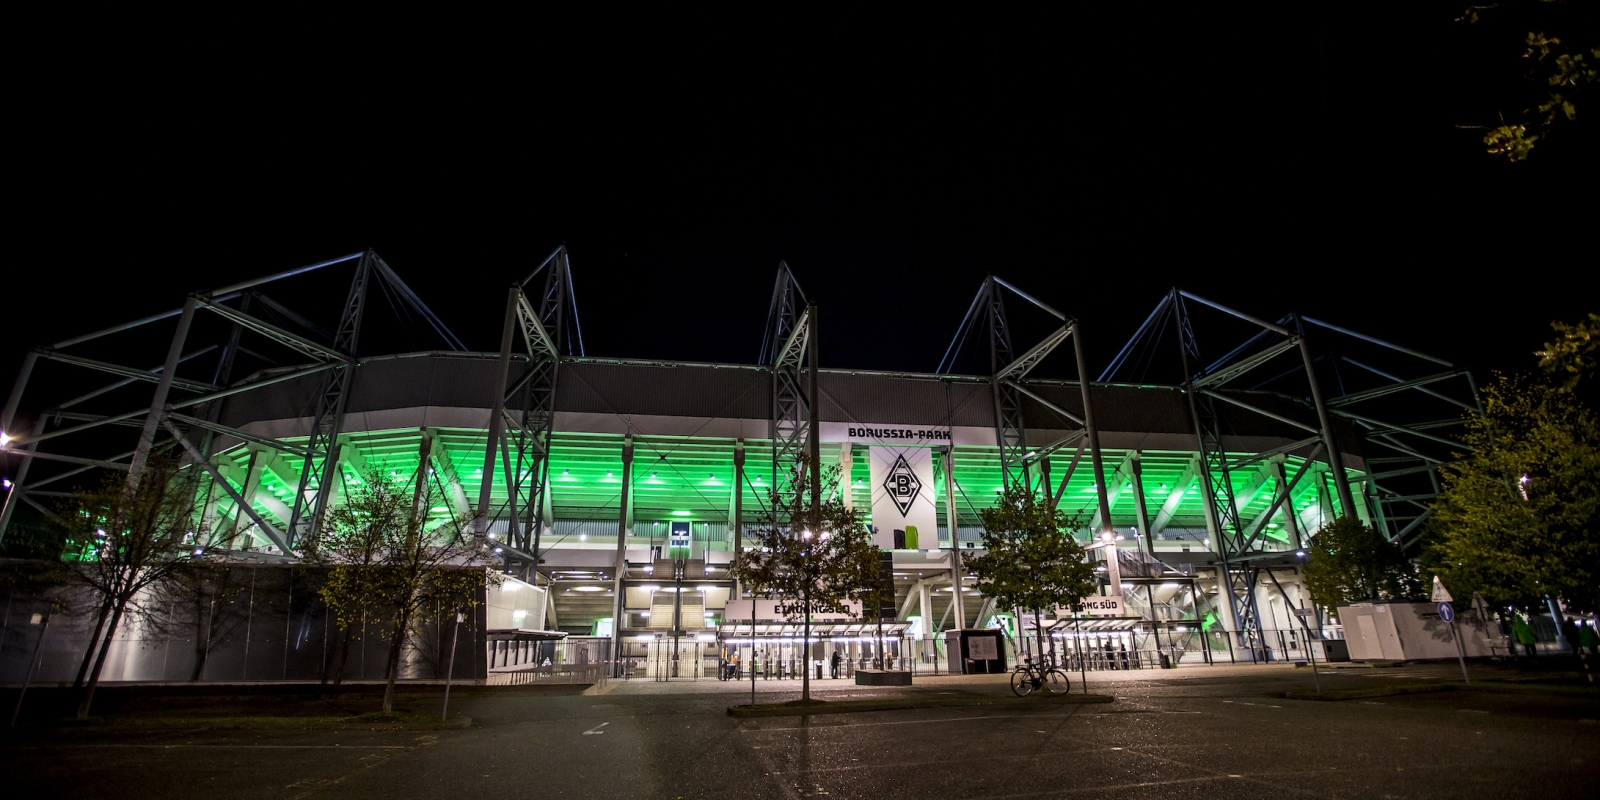 Stadion BORUSSIA-PARK in Mönchengladbach aus der Außenansicht bei Nacht, es ist innen beleuchtet. Viele grüne Linien an der Glasaußenfassade lassen die Arena grünlich aufleuchten.